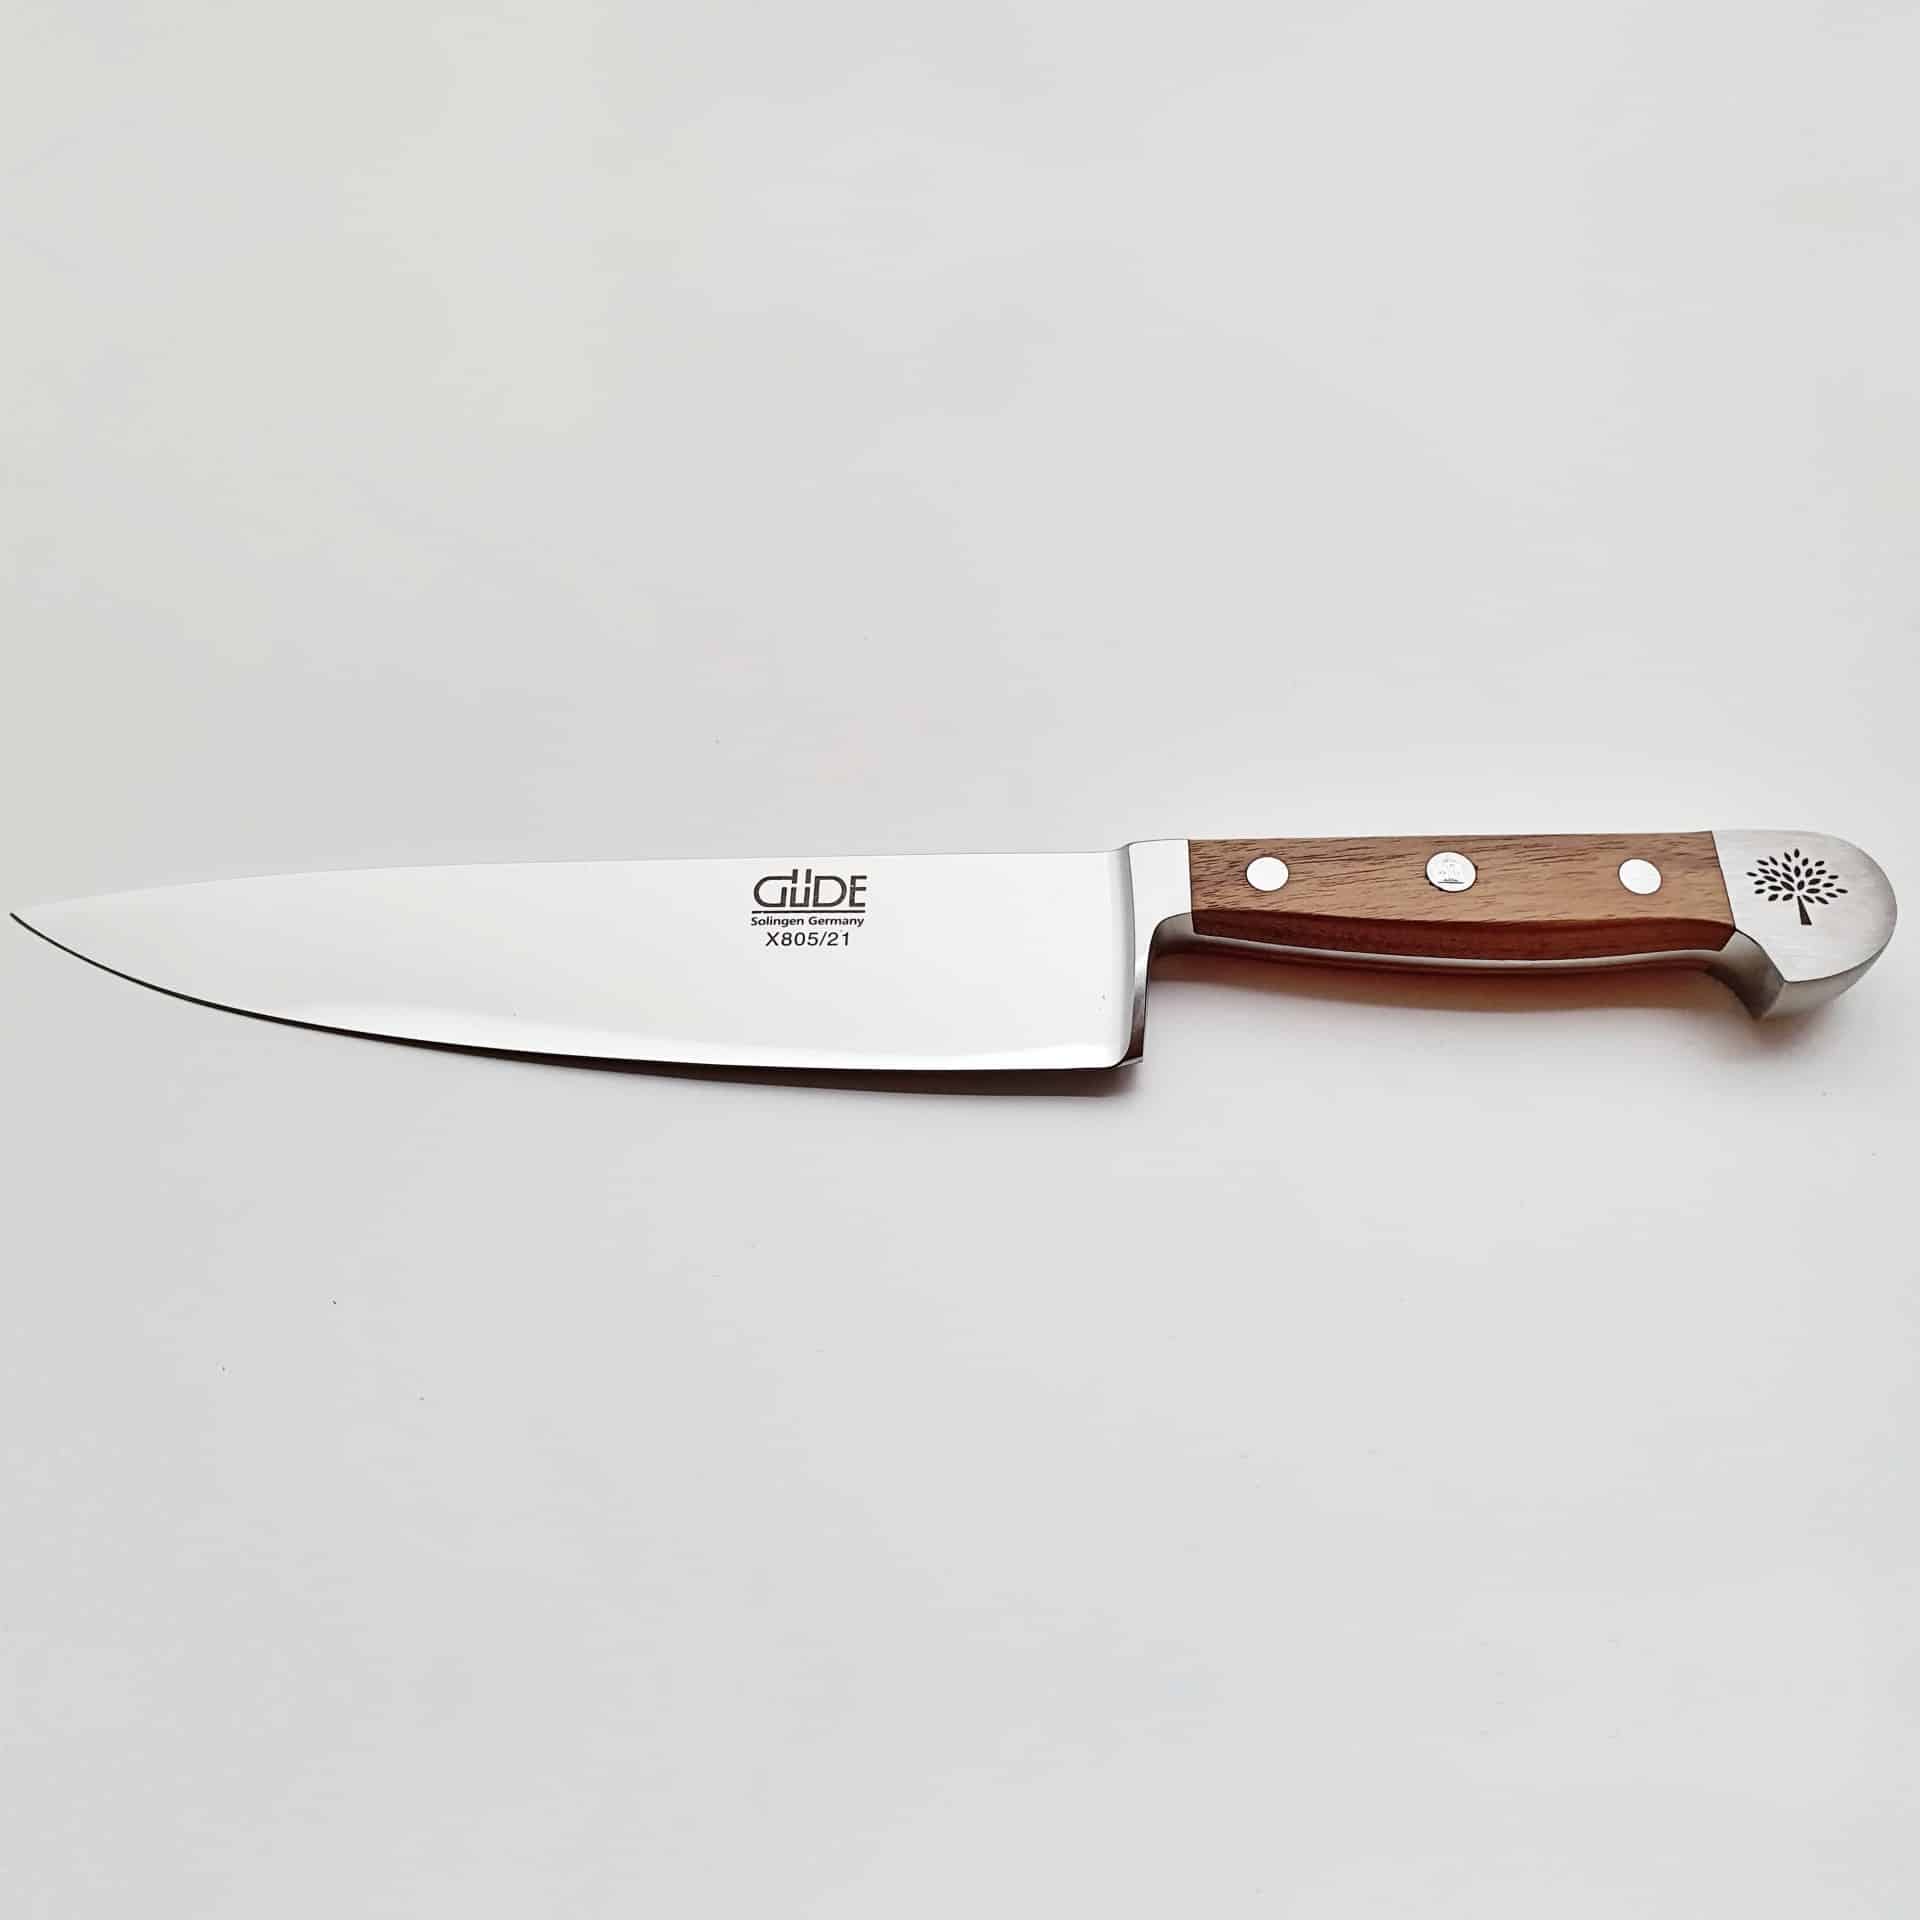 Vue d'ensemble des aciers utilisés pour les couteaux de cuisine